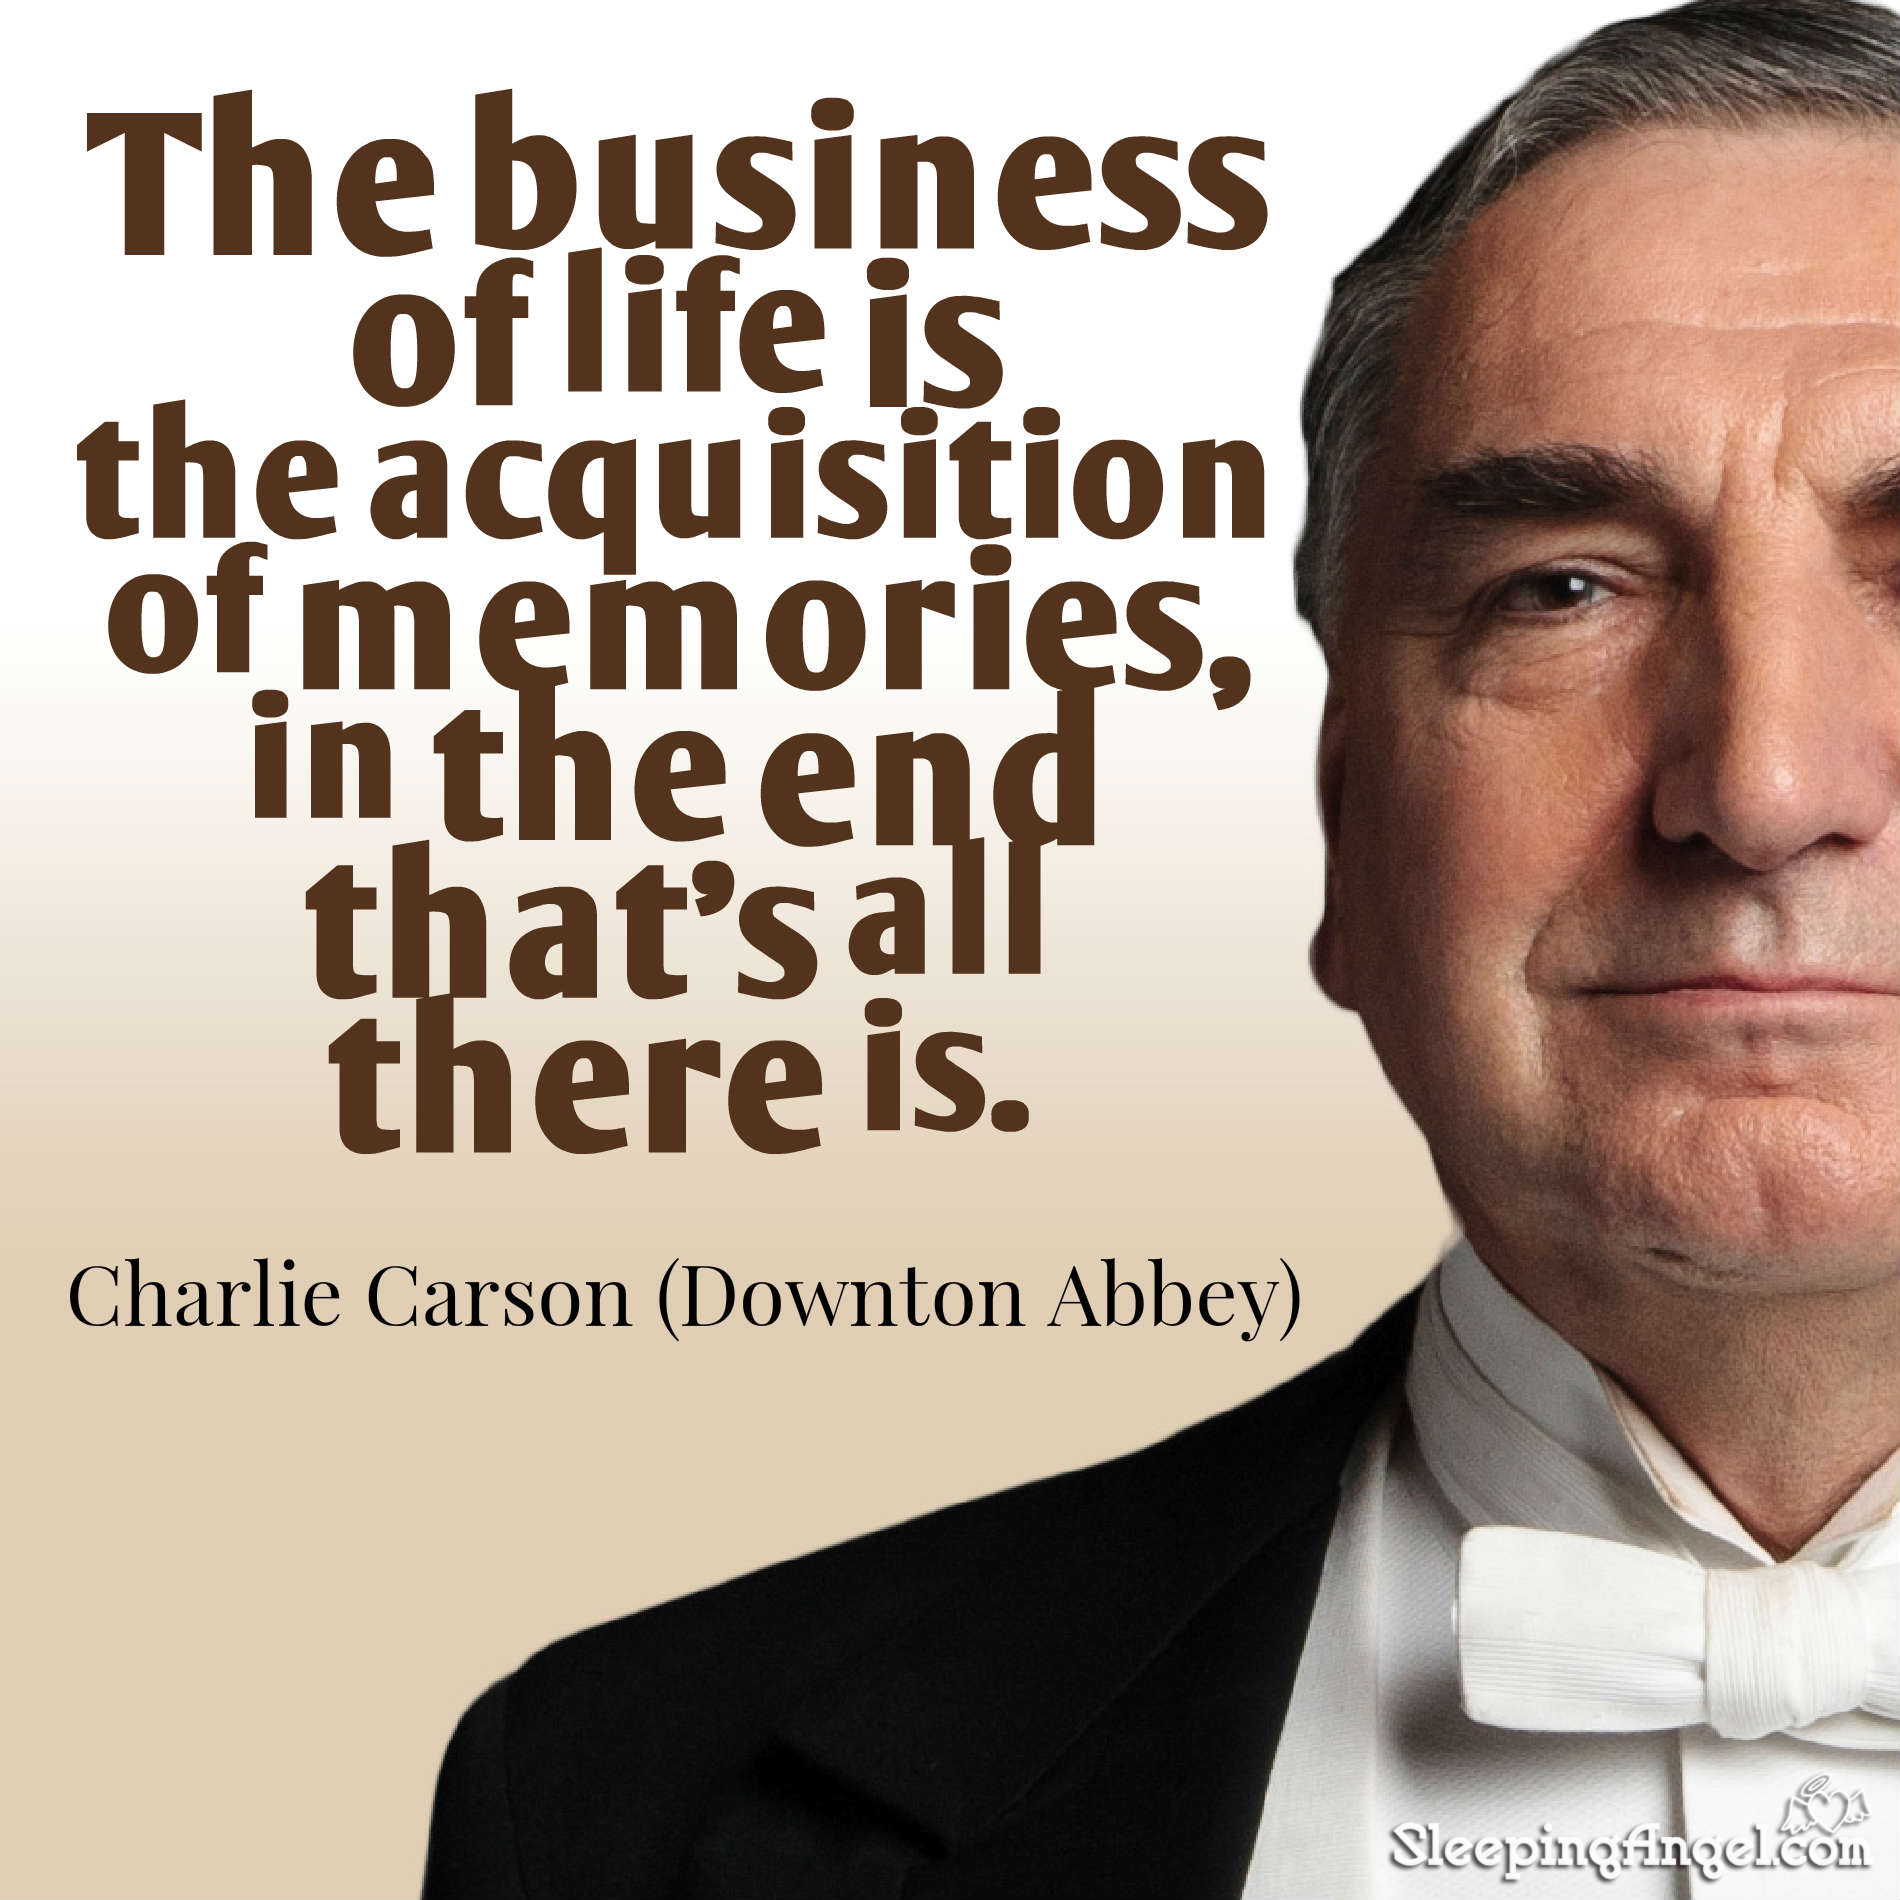 Downton Abbey Quote